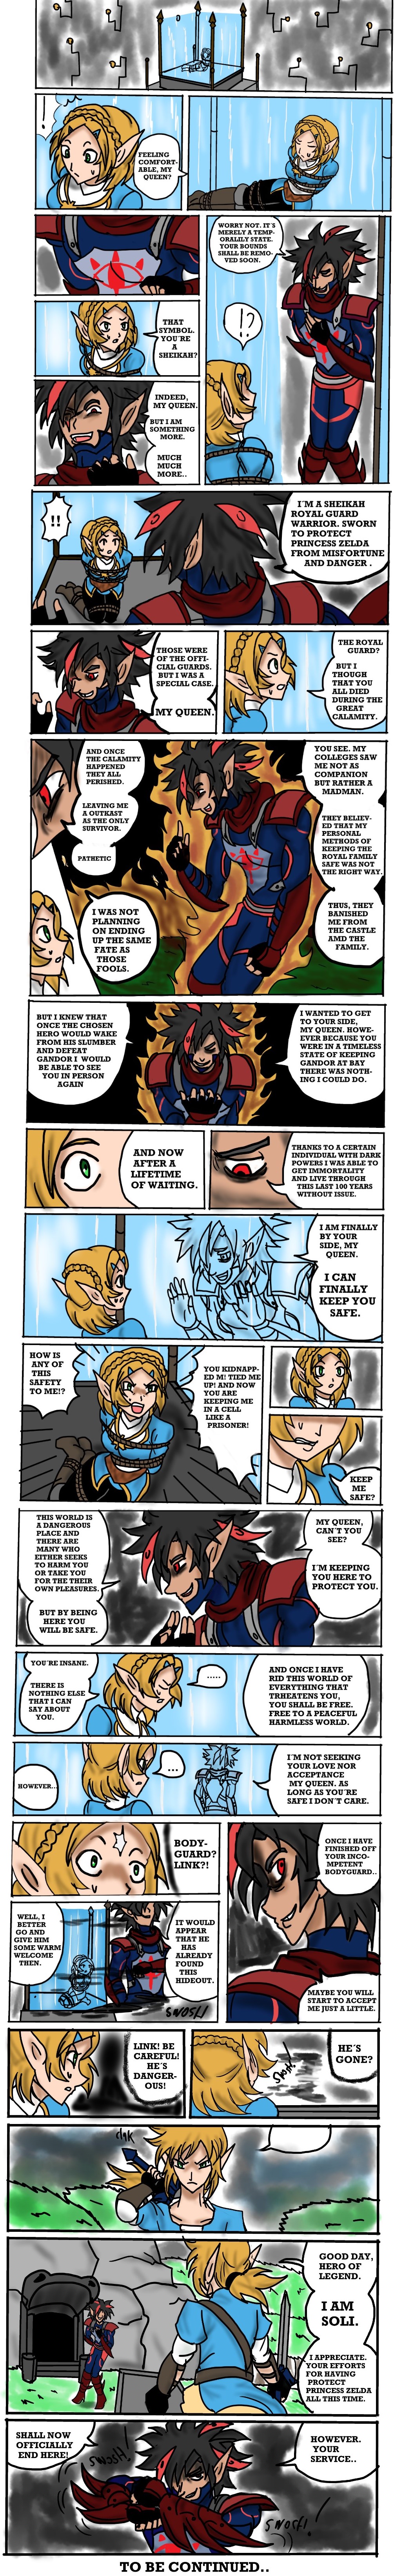 Zelda (Breath of the Wild 2?) by semsei on DeviantArt